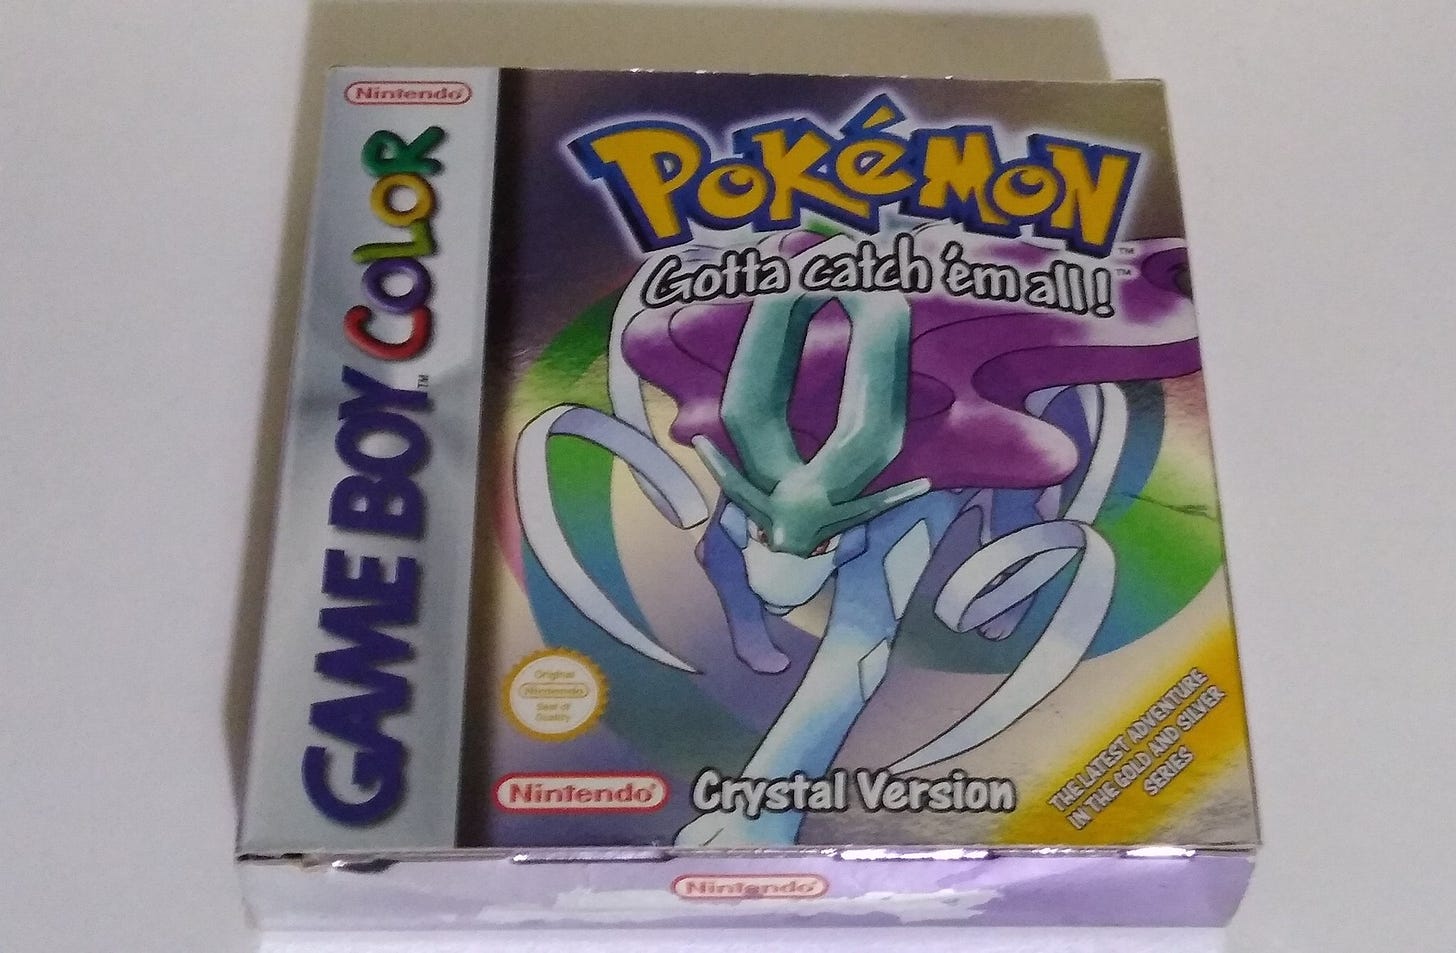 My beloved copy of Pokémon Crystal